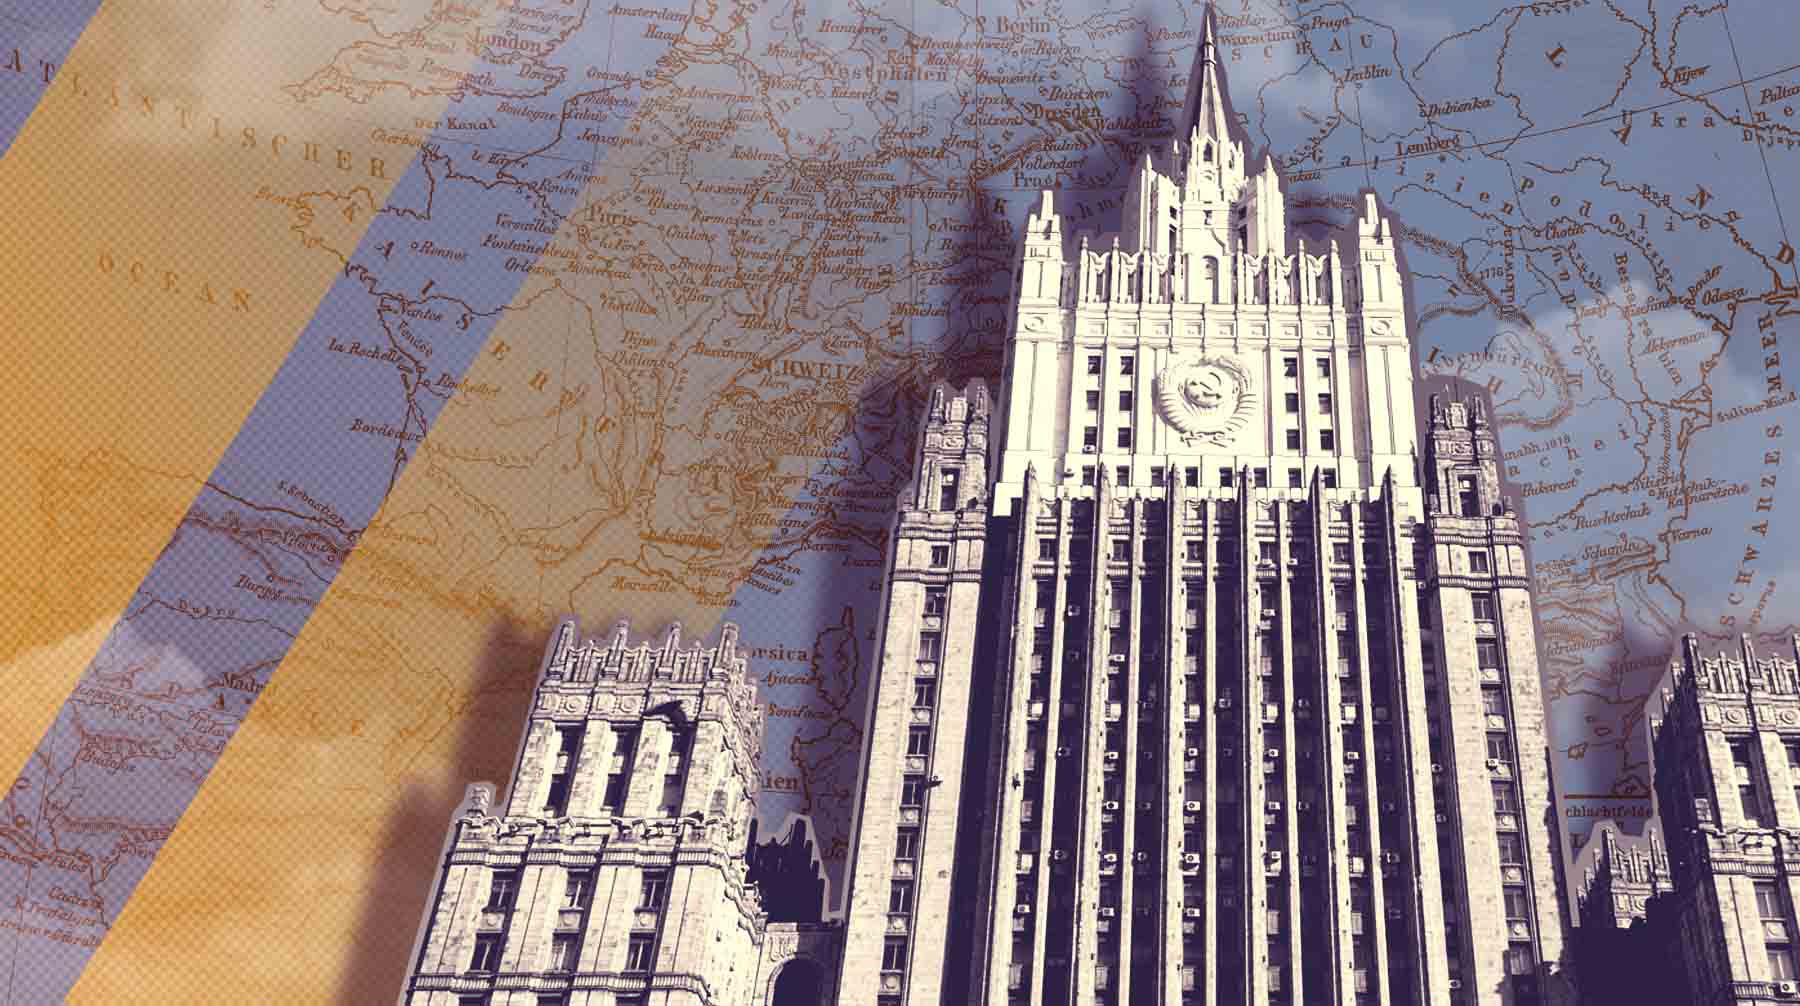 Dailystorm - МИД РФ закупил устаревшие географические карты за 250 тысяч рублей накануне присоединения новых регионов